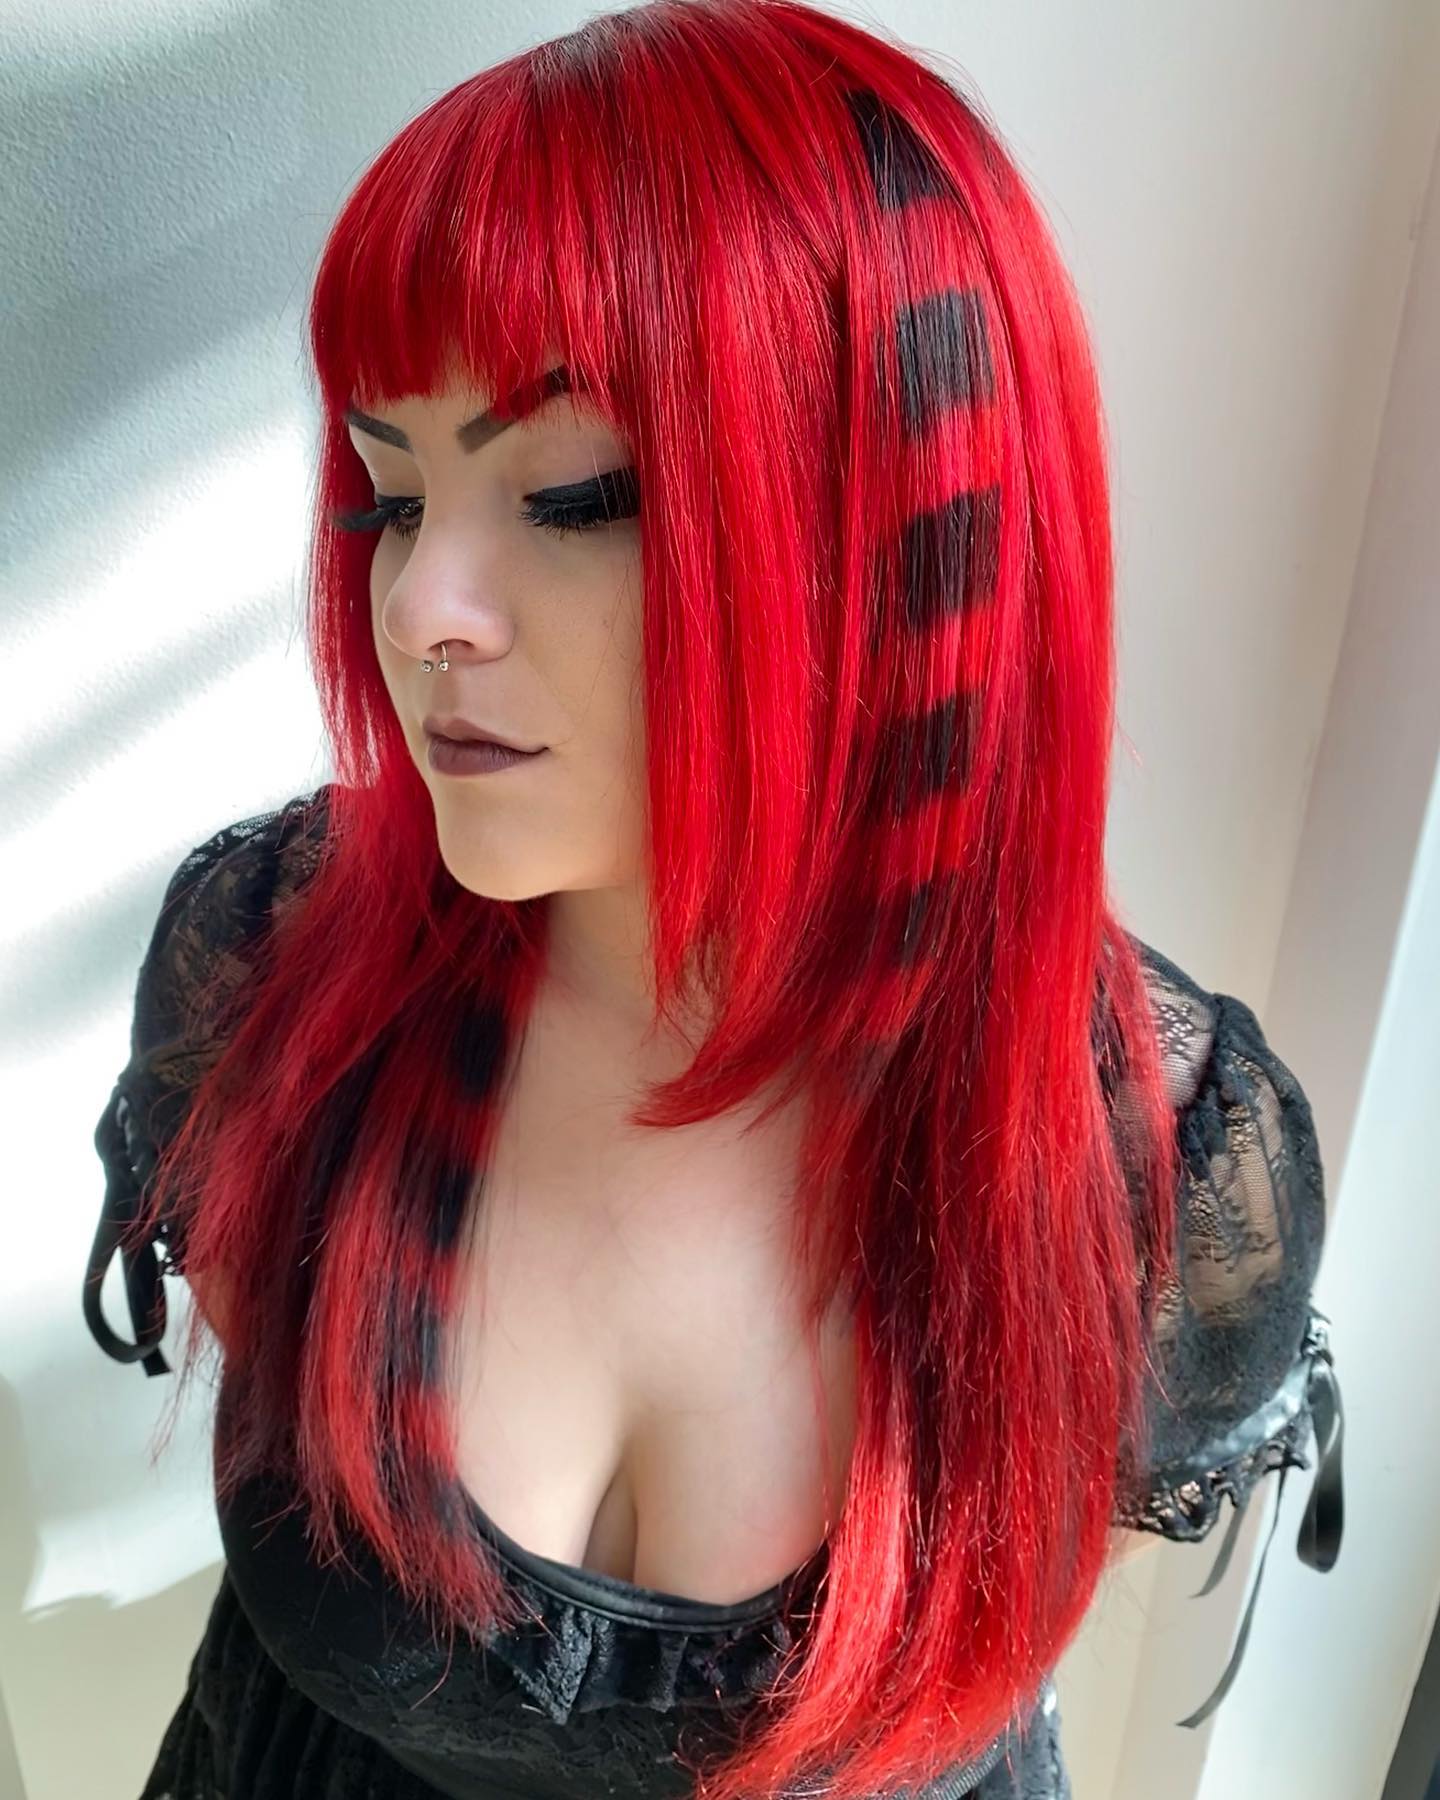 capelli rosso fuoco con disegni neri